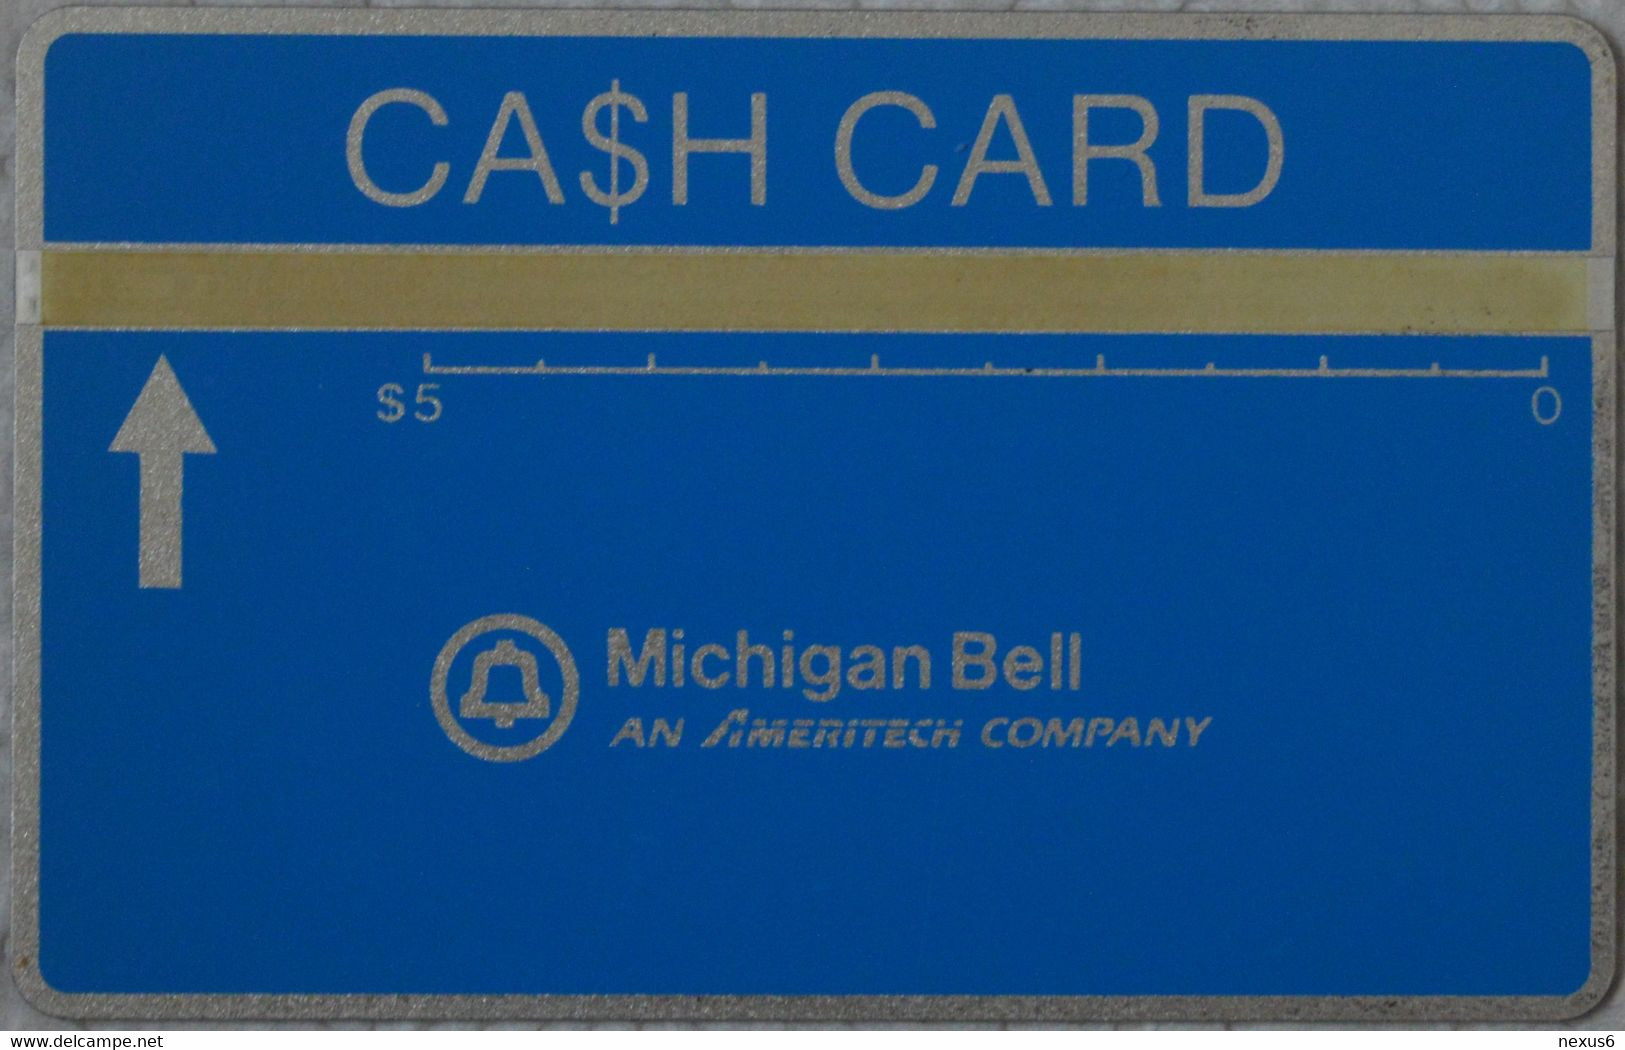 USA (Michigan Bell) - L&G - Cash Card Blue, Cn. 707B - 07.1987, 5$, 10.000ex, Mint - [1] Hologramkaarten